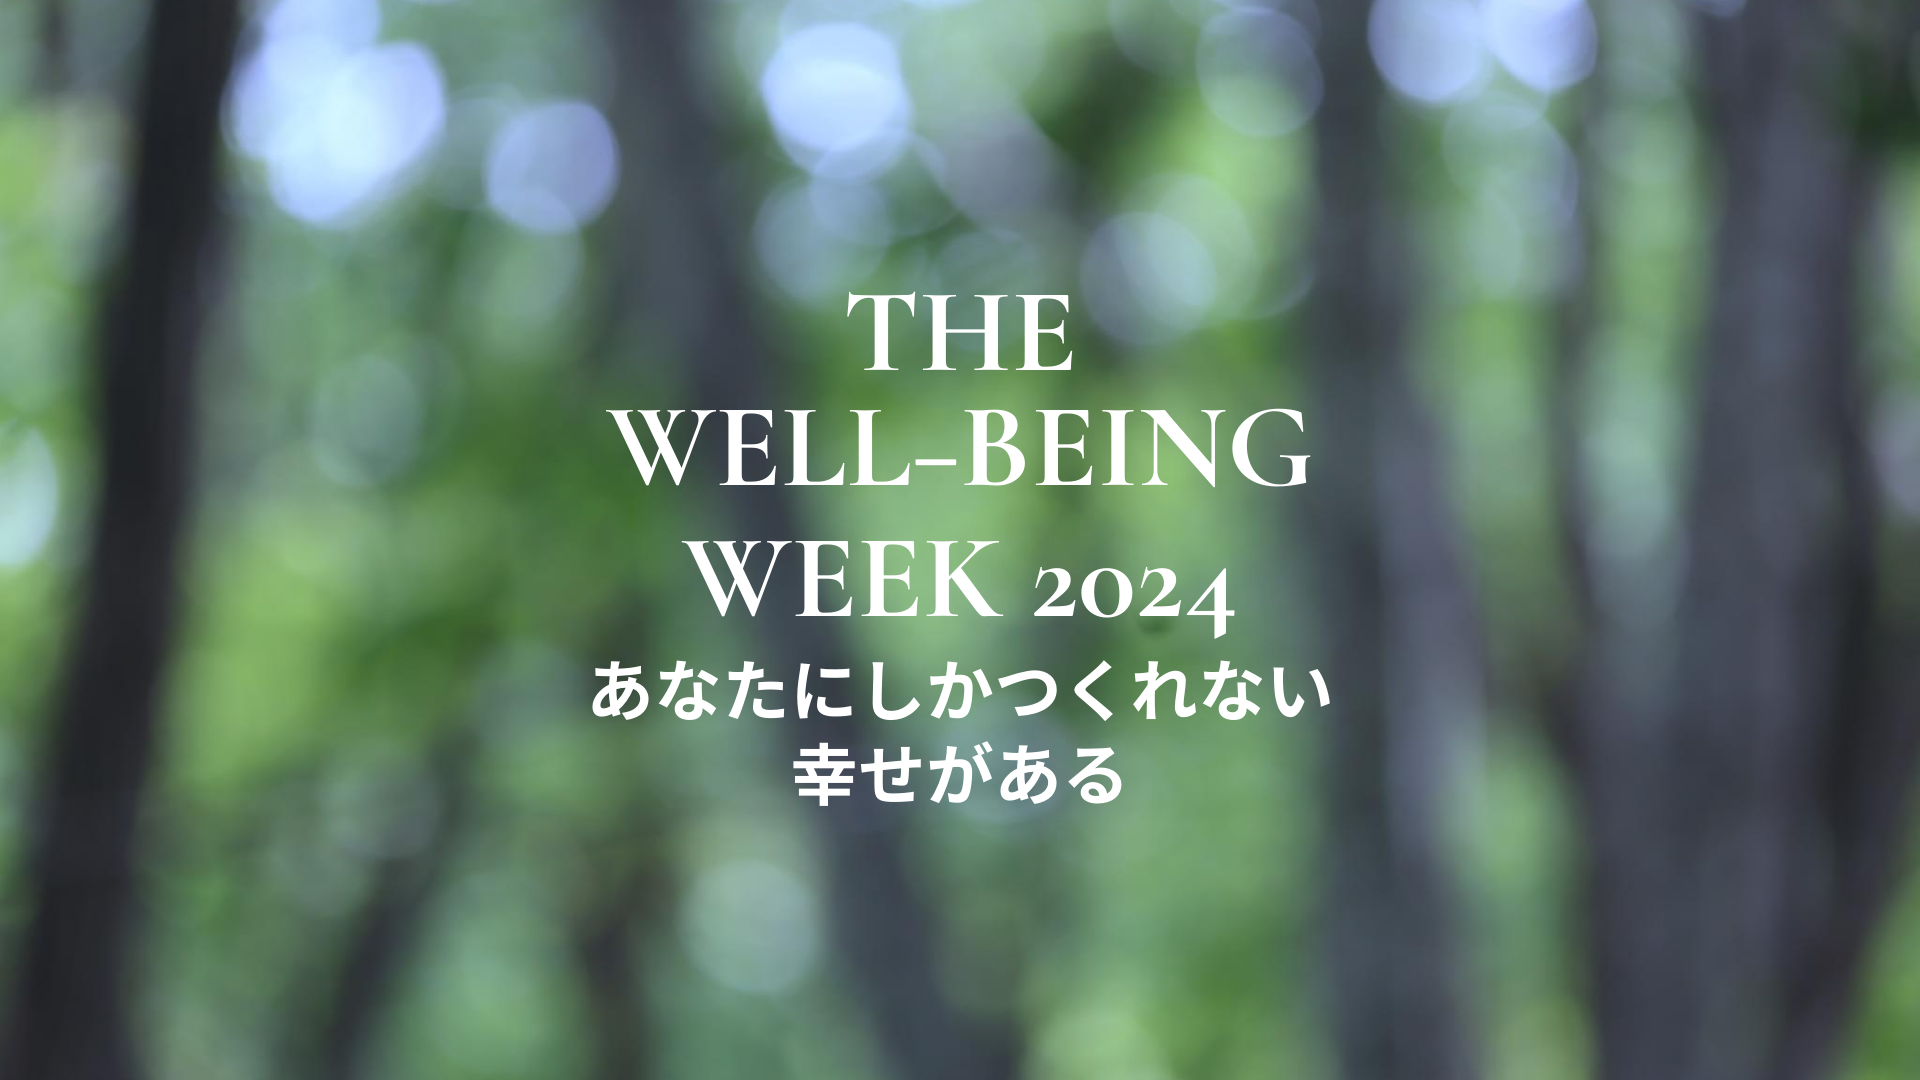 【武蔵野大学】3月20日に日本初の「ウェルビーイング学部」開設を記念してシンポジウムを開催 ～ 3月17日～24日「THE WELL-BEING WEEK 2024」の開催に合わせ、オンラインでも同時開催 ～